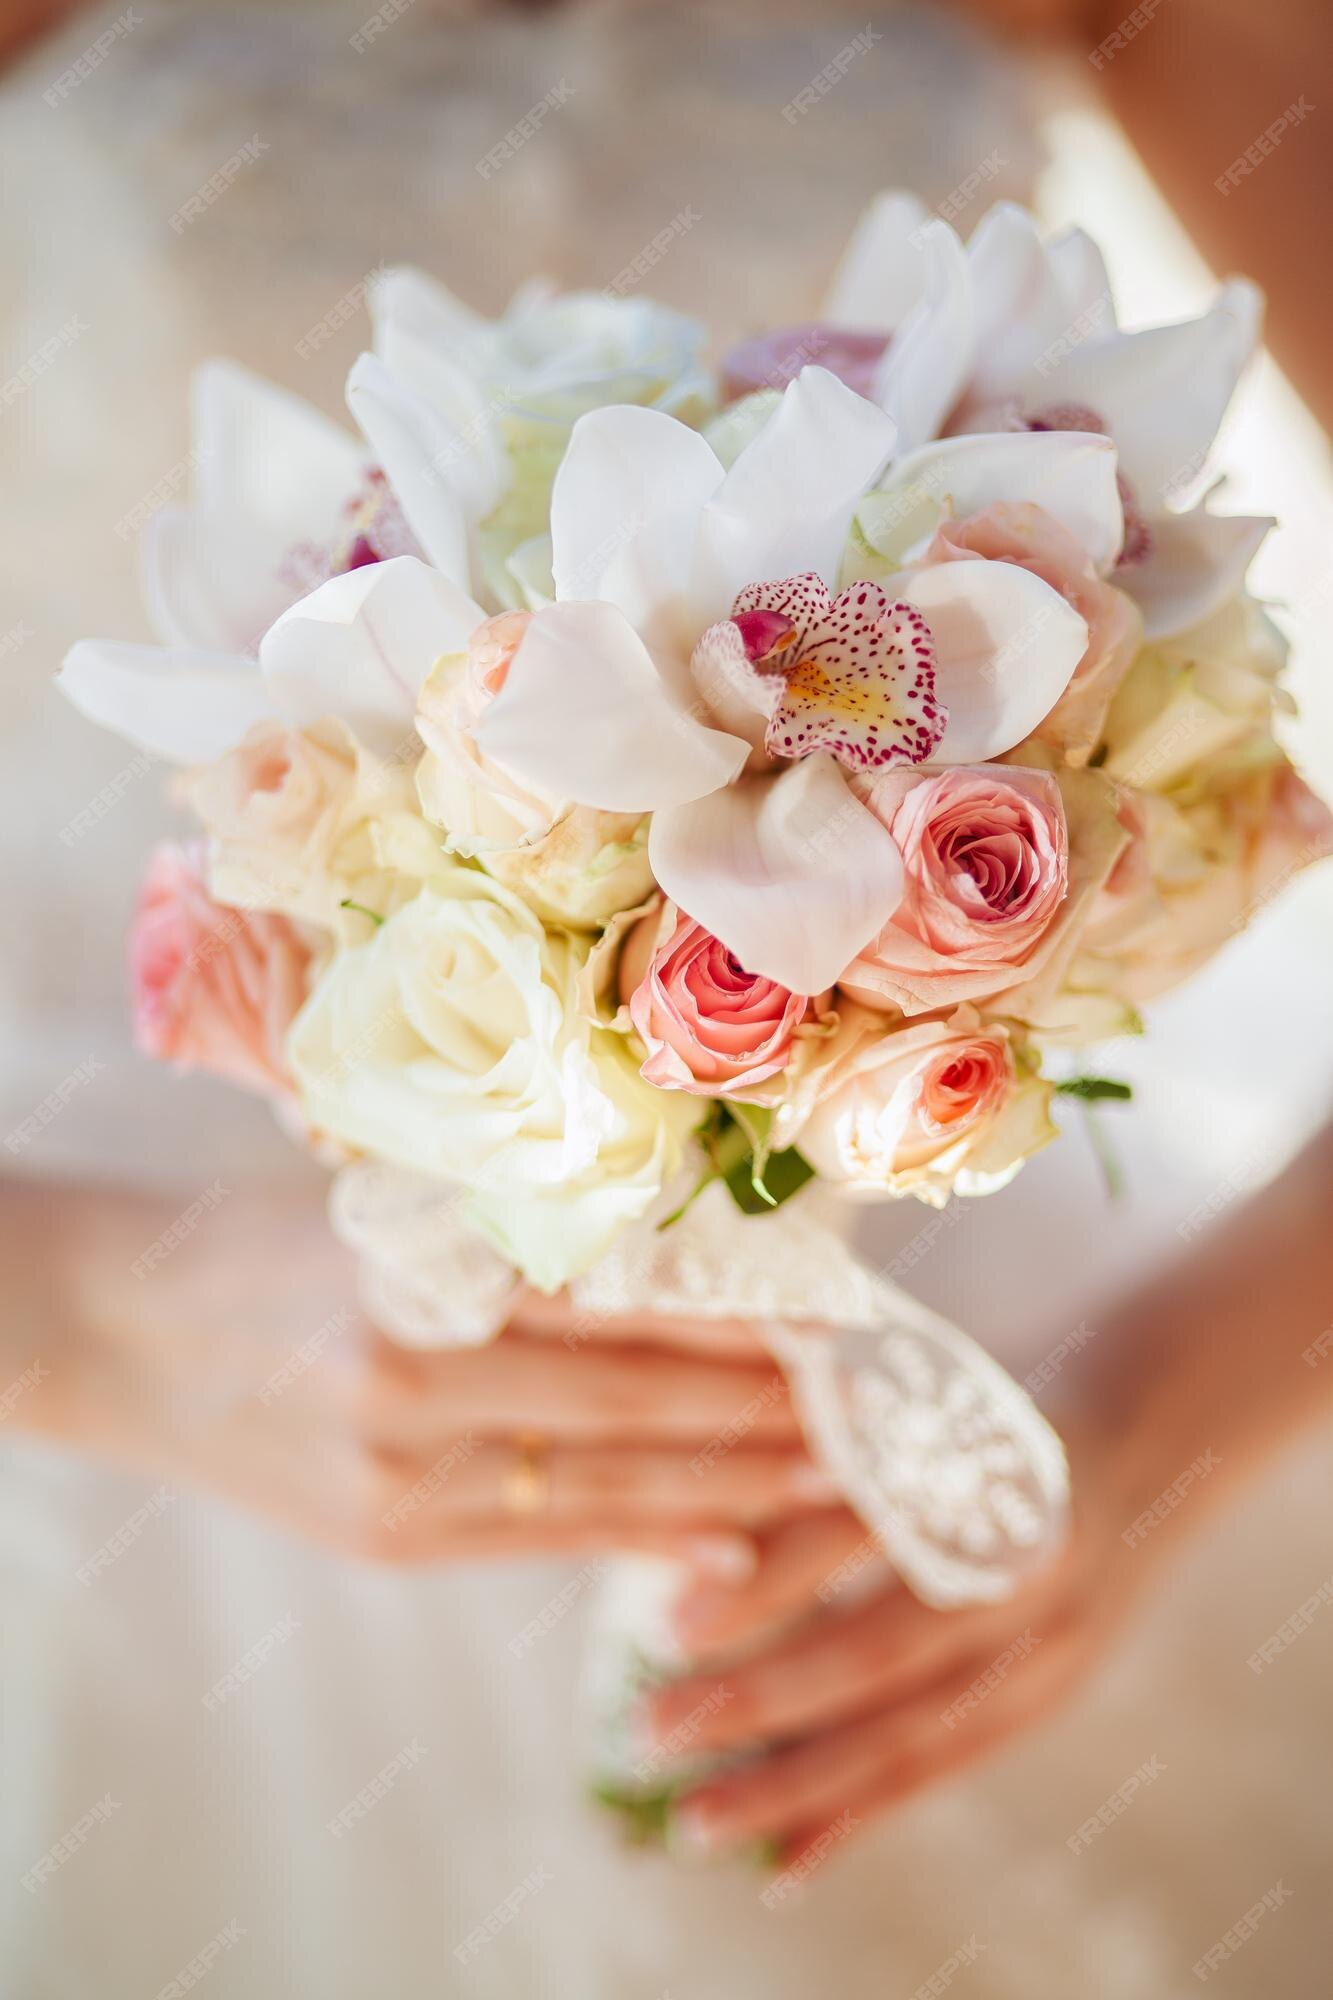 Buquê de casamento nas mãos de noivas com orquídeas e rosas | Foto Premium